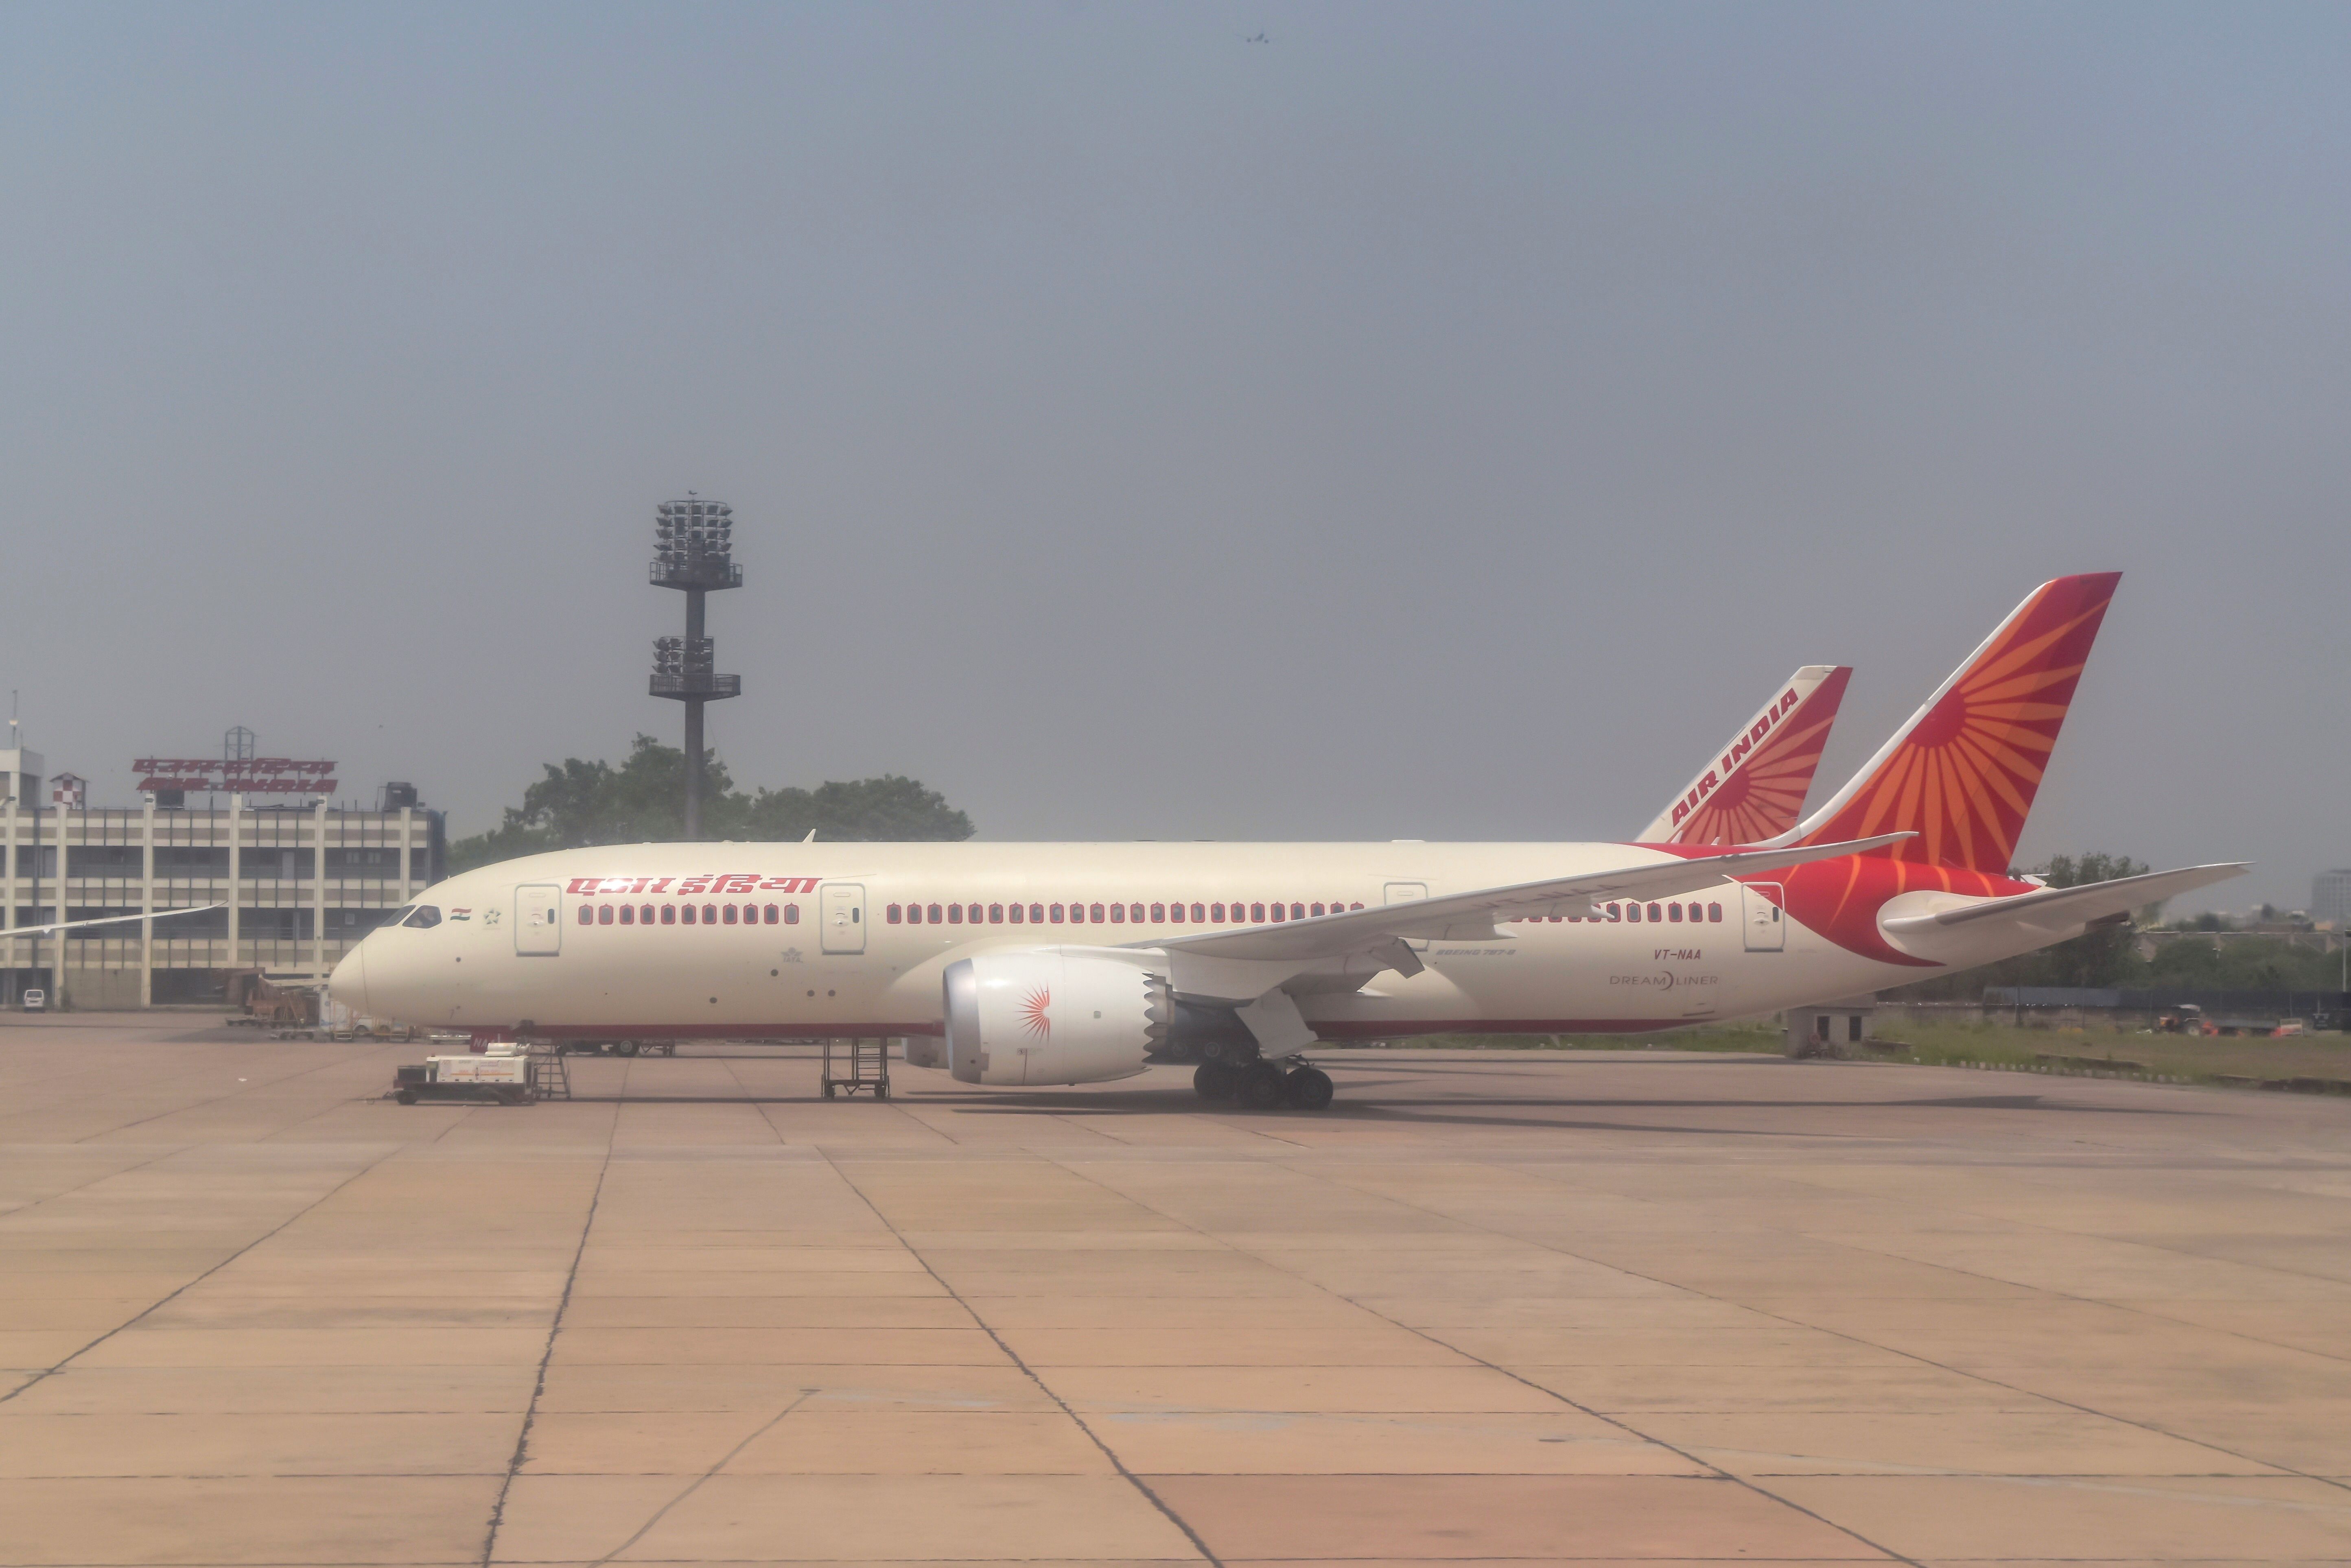  An Air India airplane at Delhi Airport.